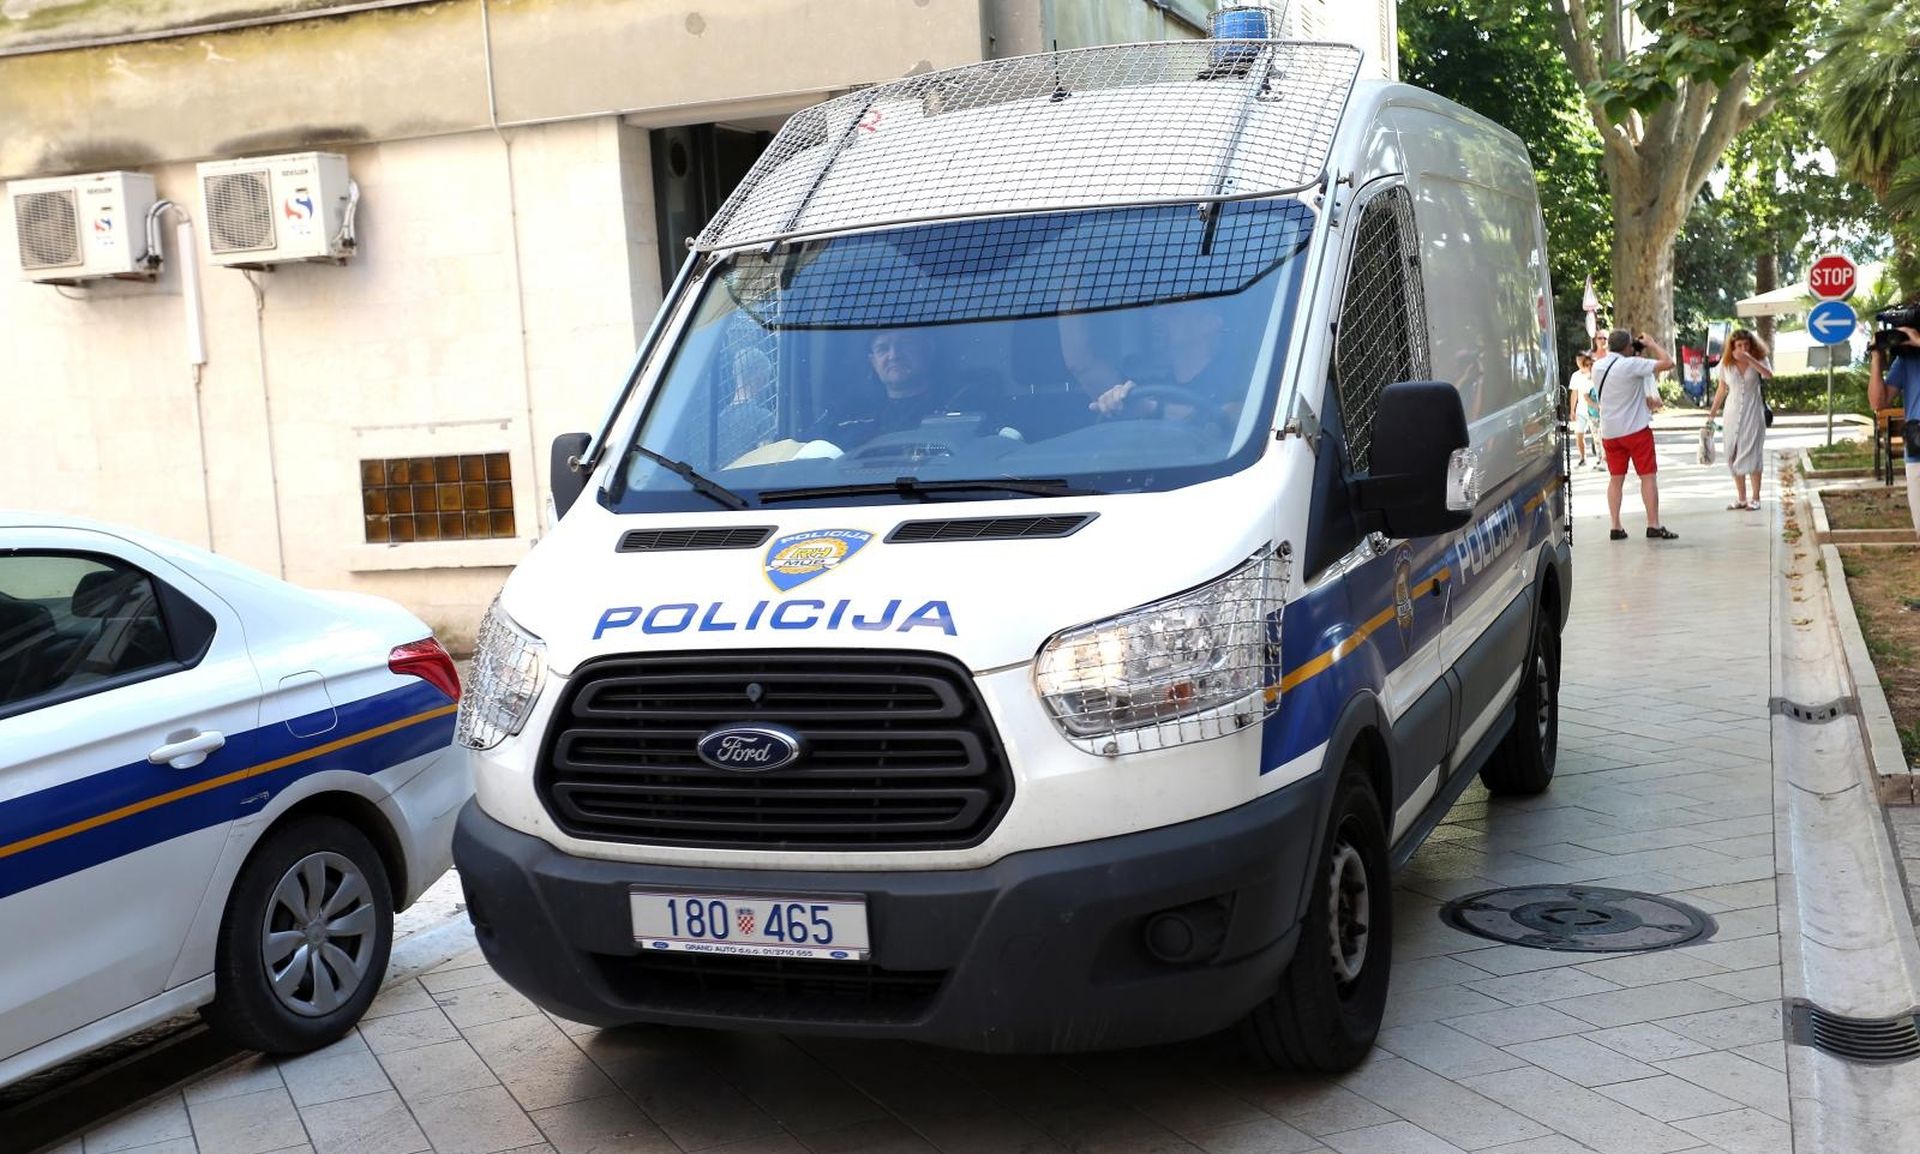 04.07.2018., Zadar - Istraznom sucu na Zupanijski sud priveden je uhicen muskarac osumnjicen za bombaski napad. Photo: Dusko Jaramaz/PIXSELL